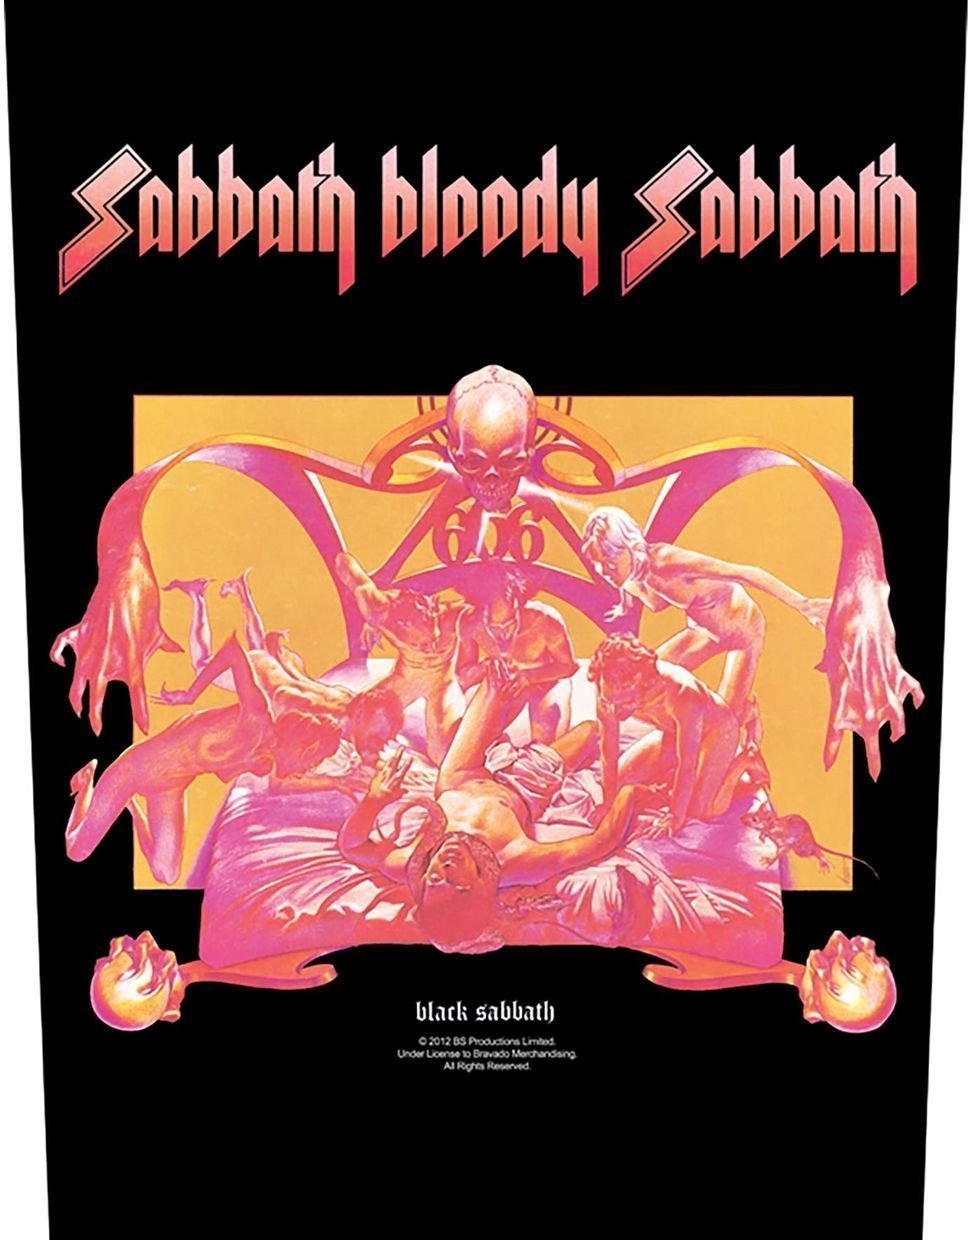 Correctif Black Sabbath Sabbath Bloody Sabbath Correctif